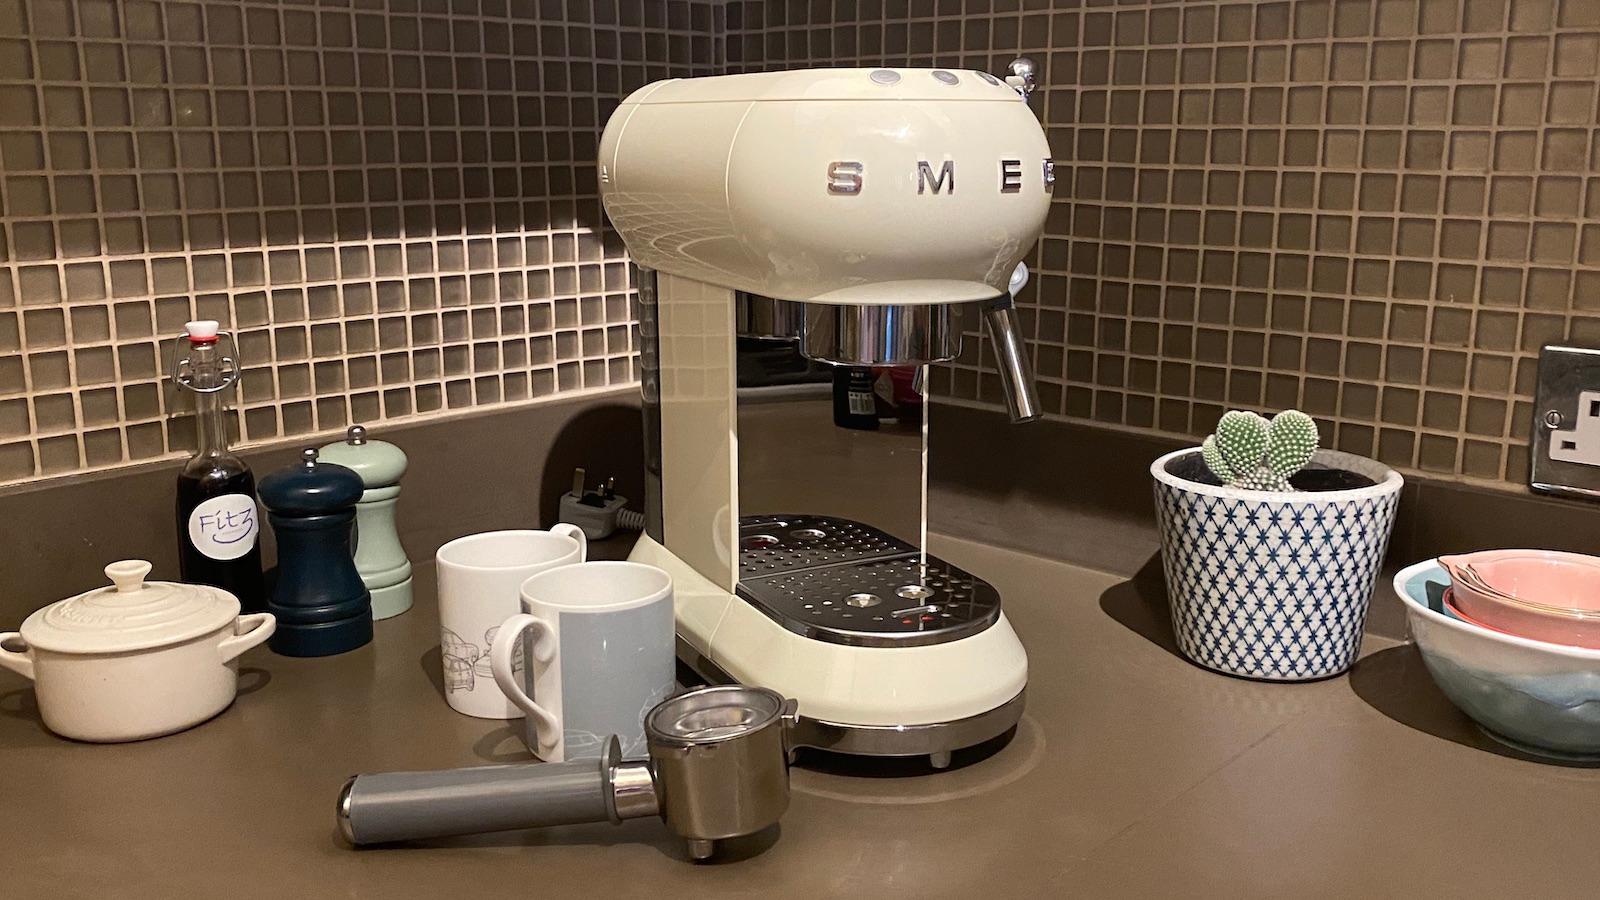   Cafetera Espresso Smeg - La máquina más elegante